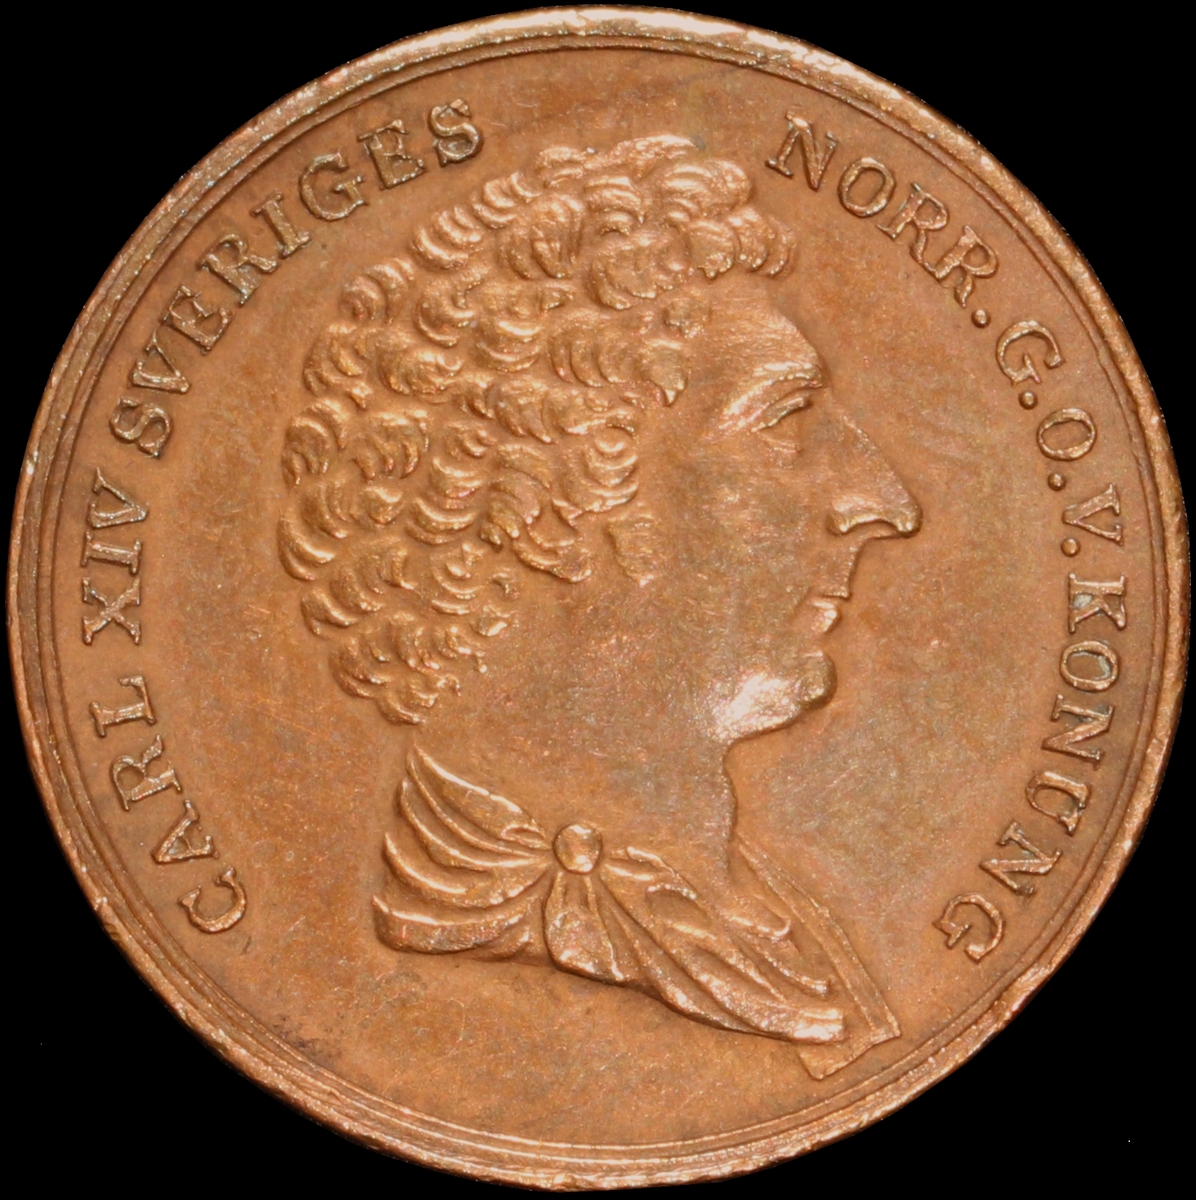 Mynt med valören 1/4 skilling. Åtsidan har en bild av Kung Karl XIV Johan och frånsidan visar valör, tre kronor och två kvistar.